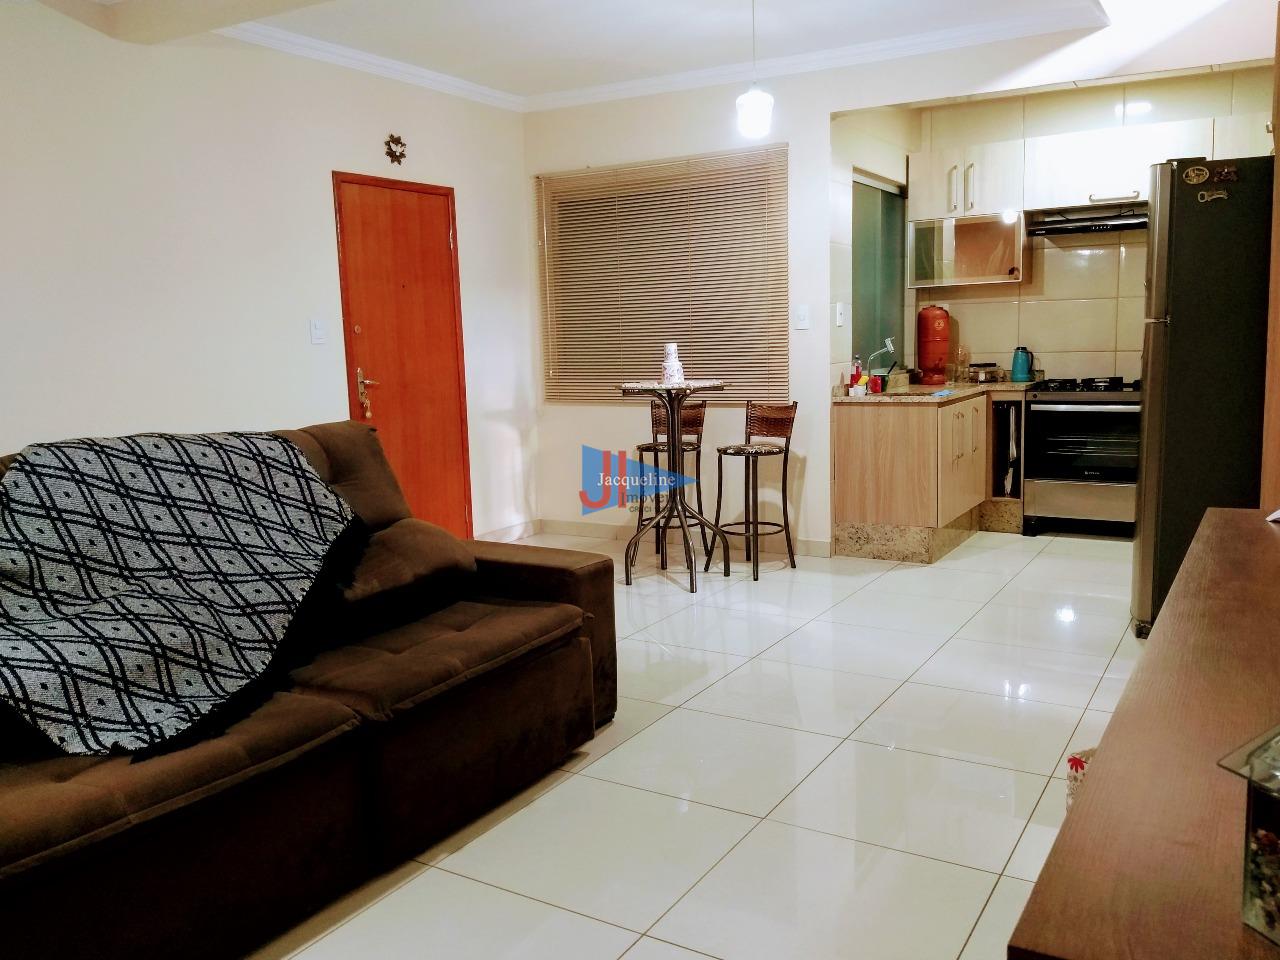 Apartamento Duplex à venda no Manoel Corrêa: Salas integradas com cozinha